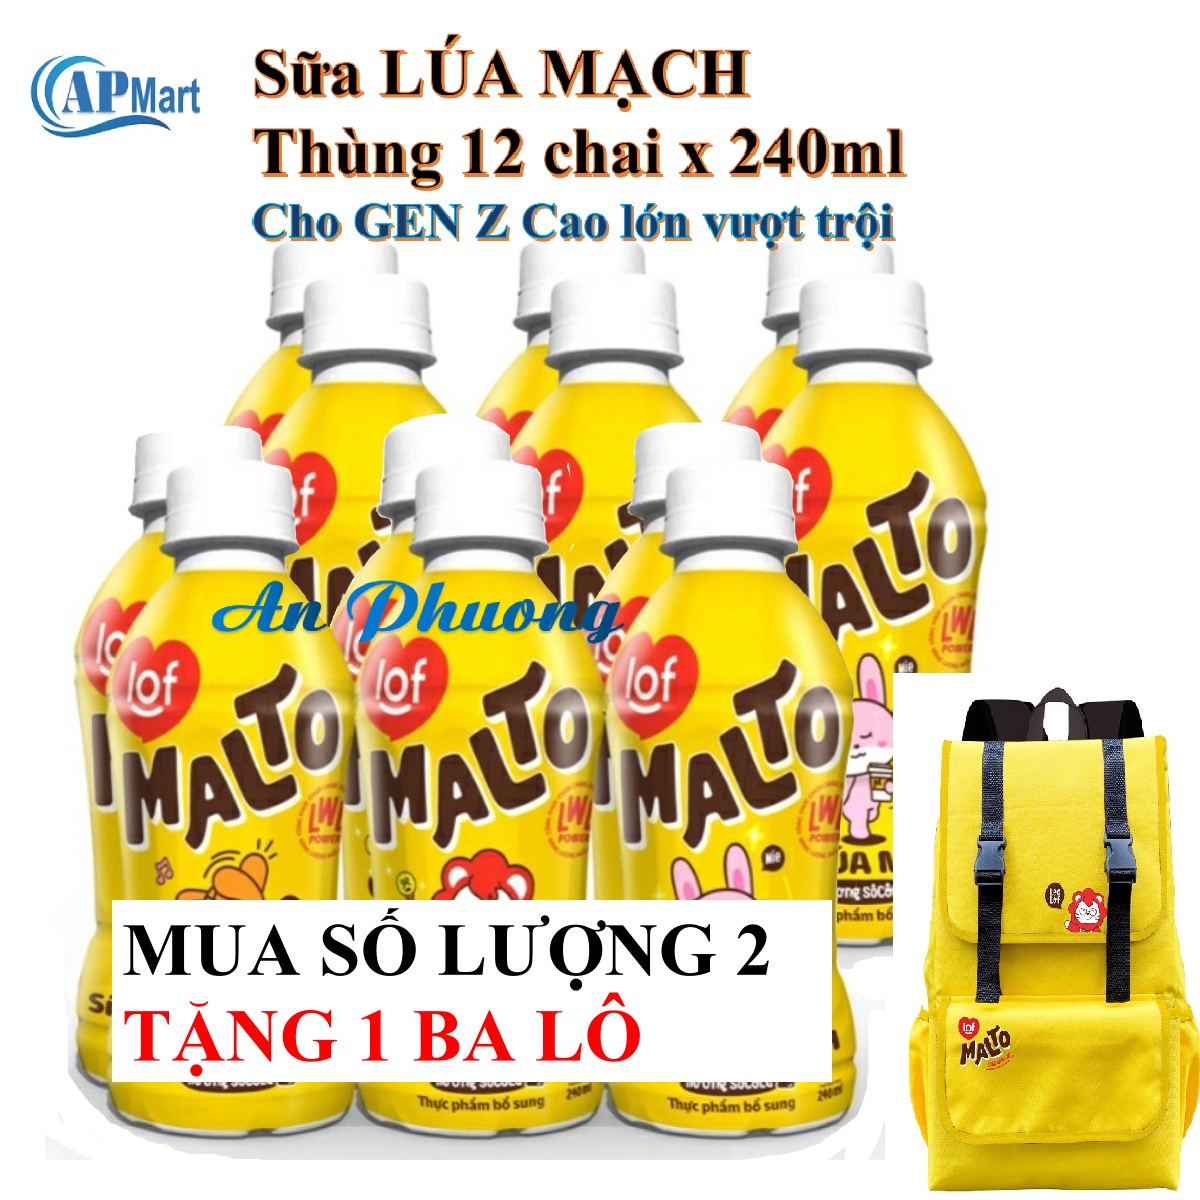 Sữa lúa mạch MALTO thùng 12 chai 240ml cho GEN Z Cao lớn mỗi ngày